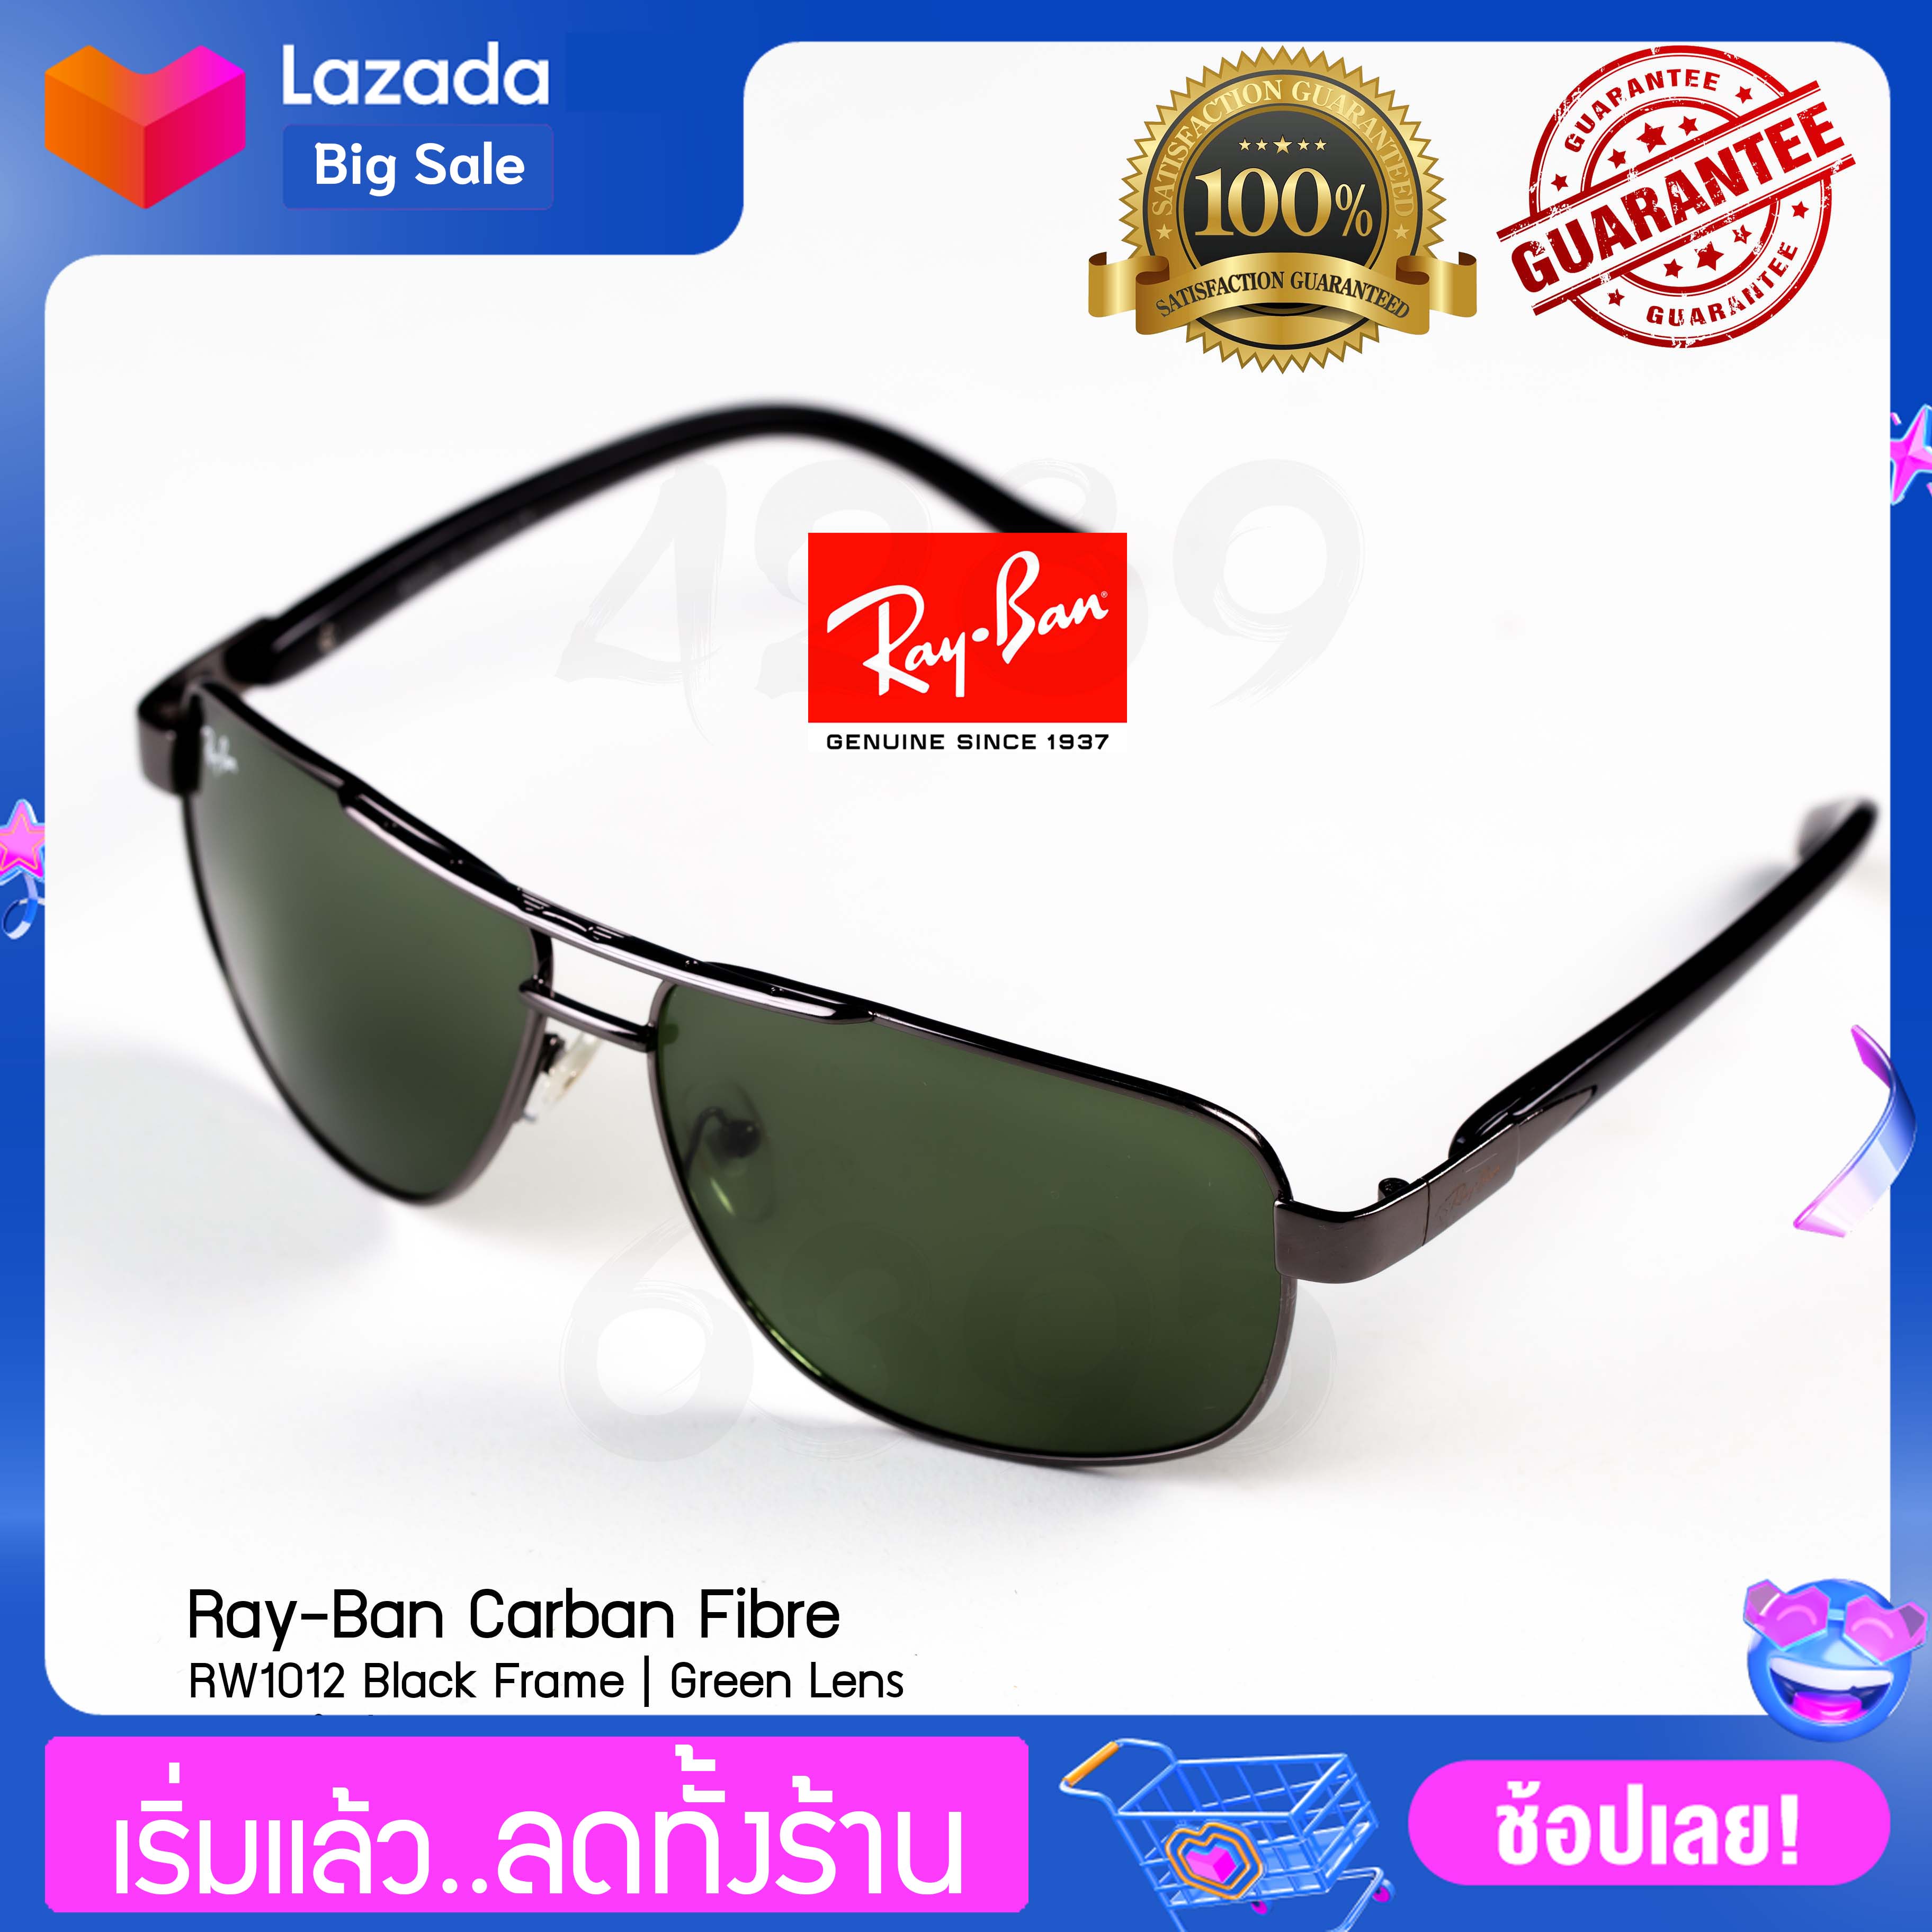 แว่นตากันแดด Carbon Fibre รุ่น RB1012 Black Frame Green Lens กรอบดำ เลนส์เขียว